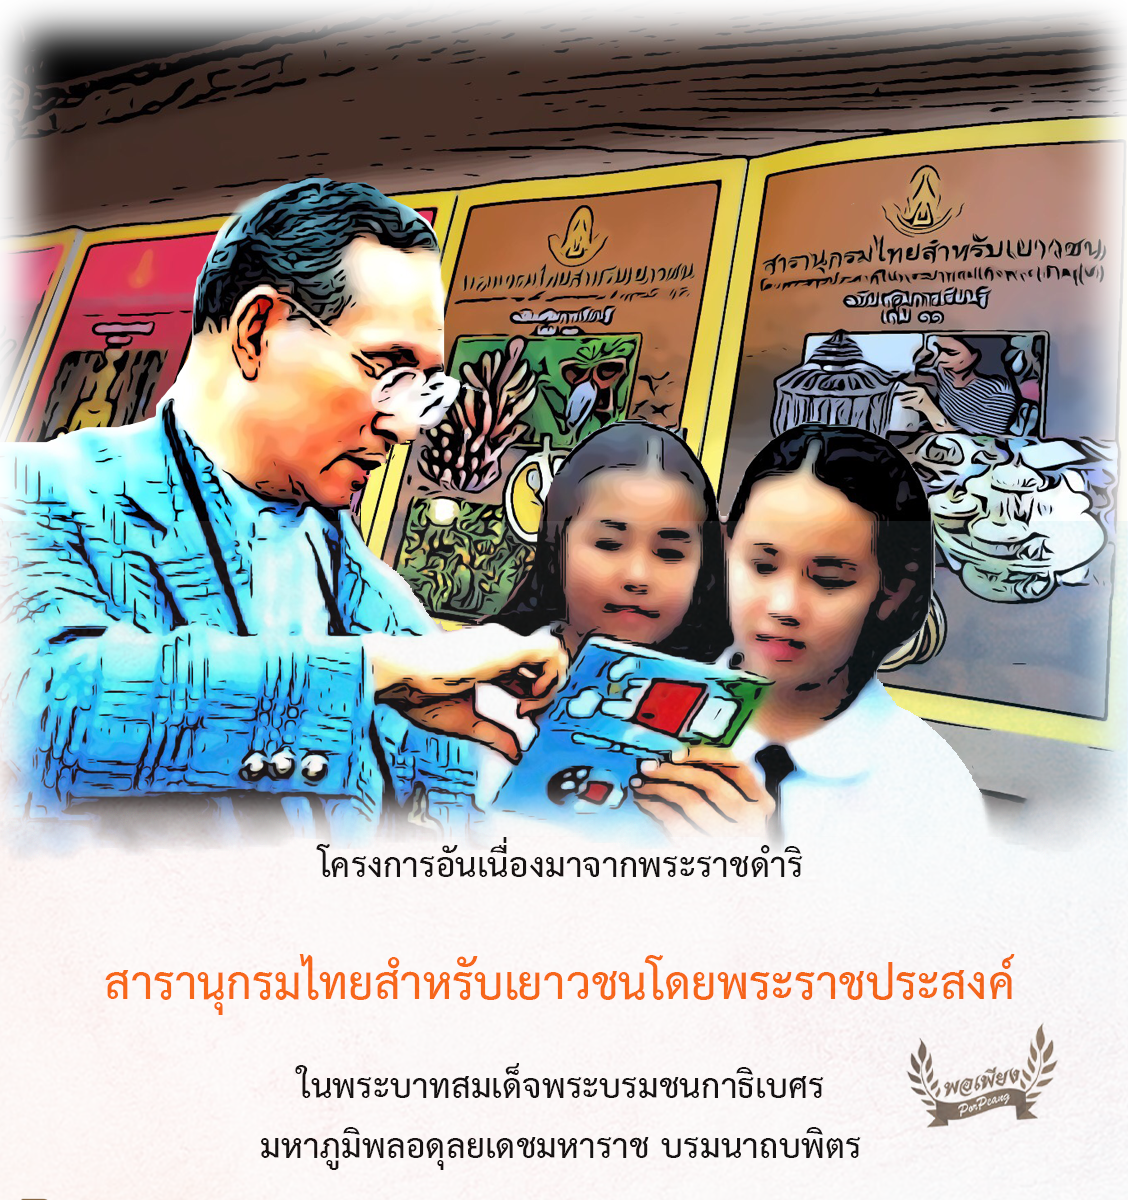 โครงการสารานุกรมไทยสำหรับเยาวชนโดยพระราชประสงค์ในพระบาทสมเด็จพระบรมชนกาธิเบศร มหาภูมิพลอดุลยเดชมหาราช บรมนาถบพิตร 